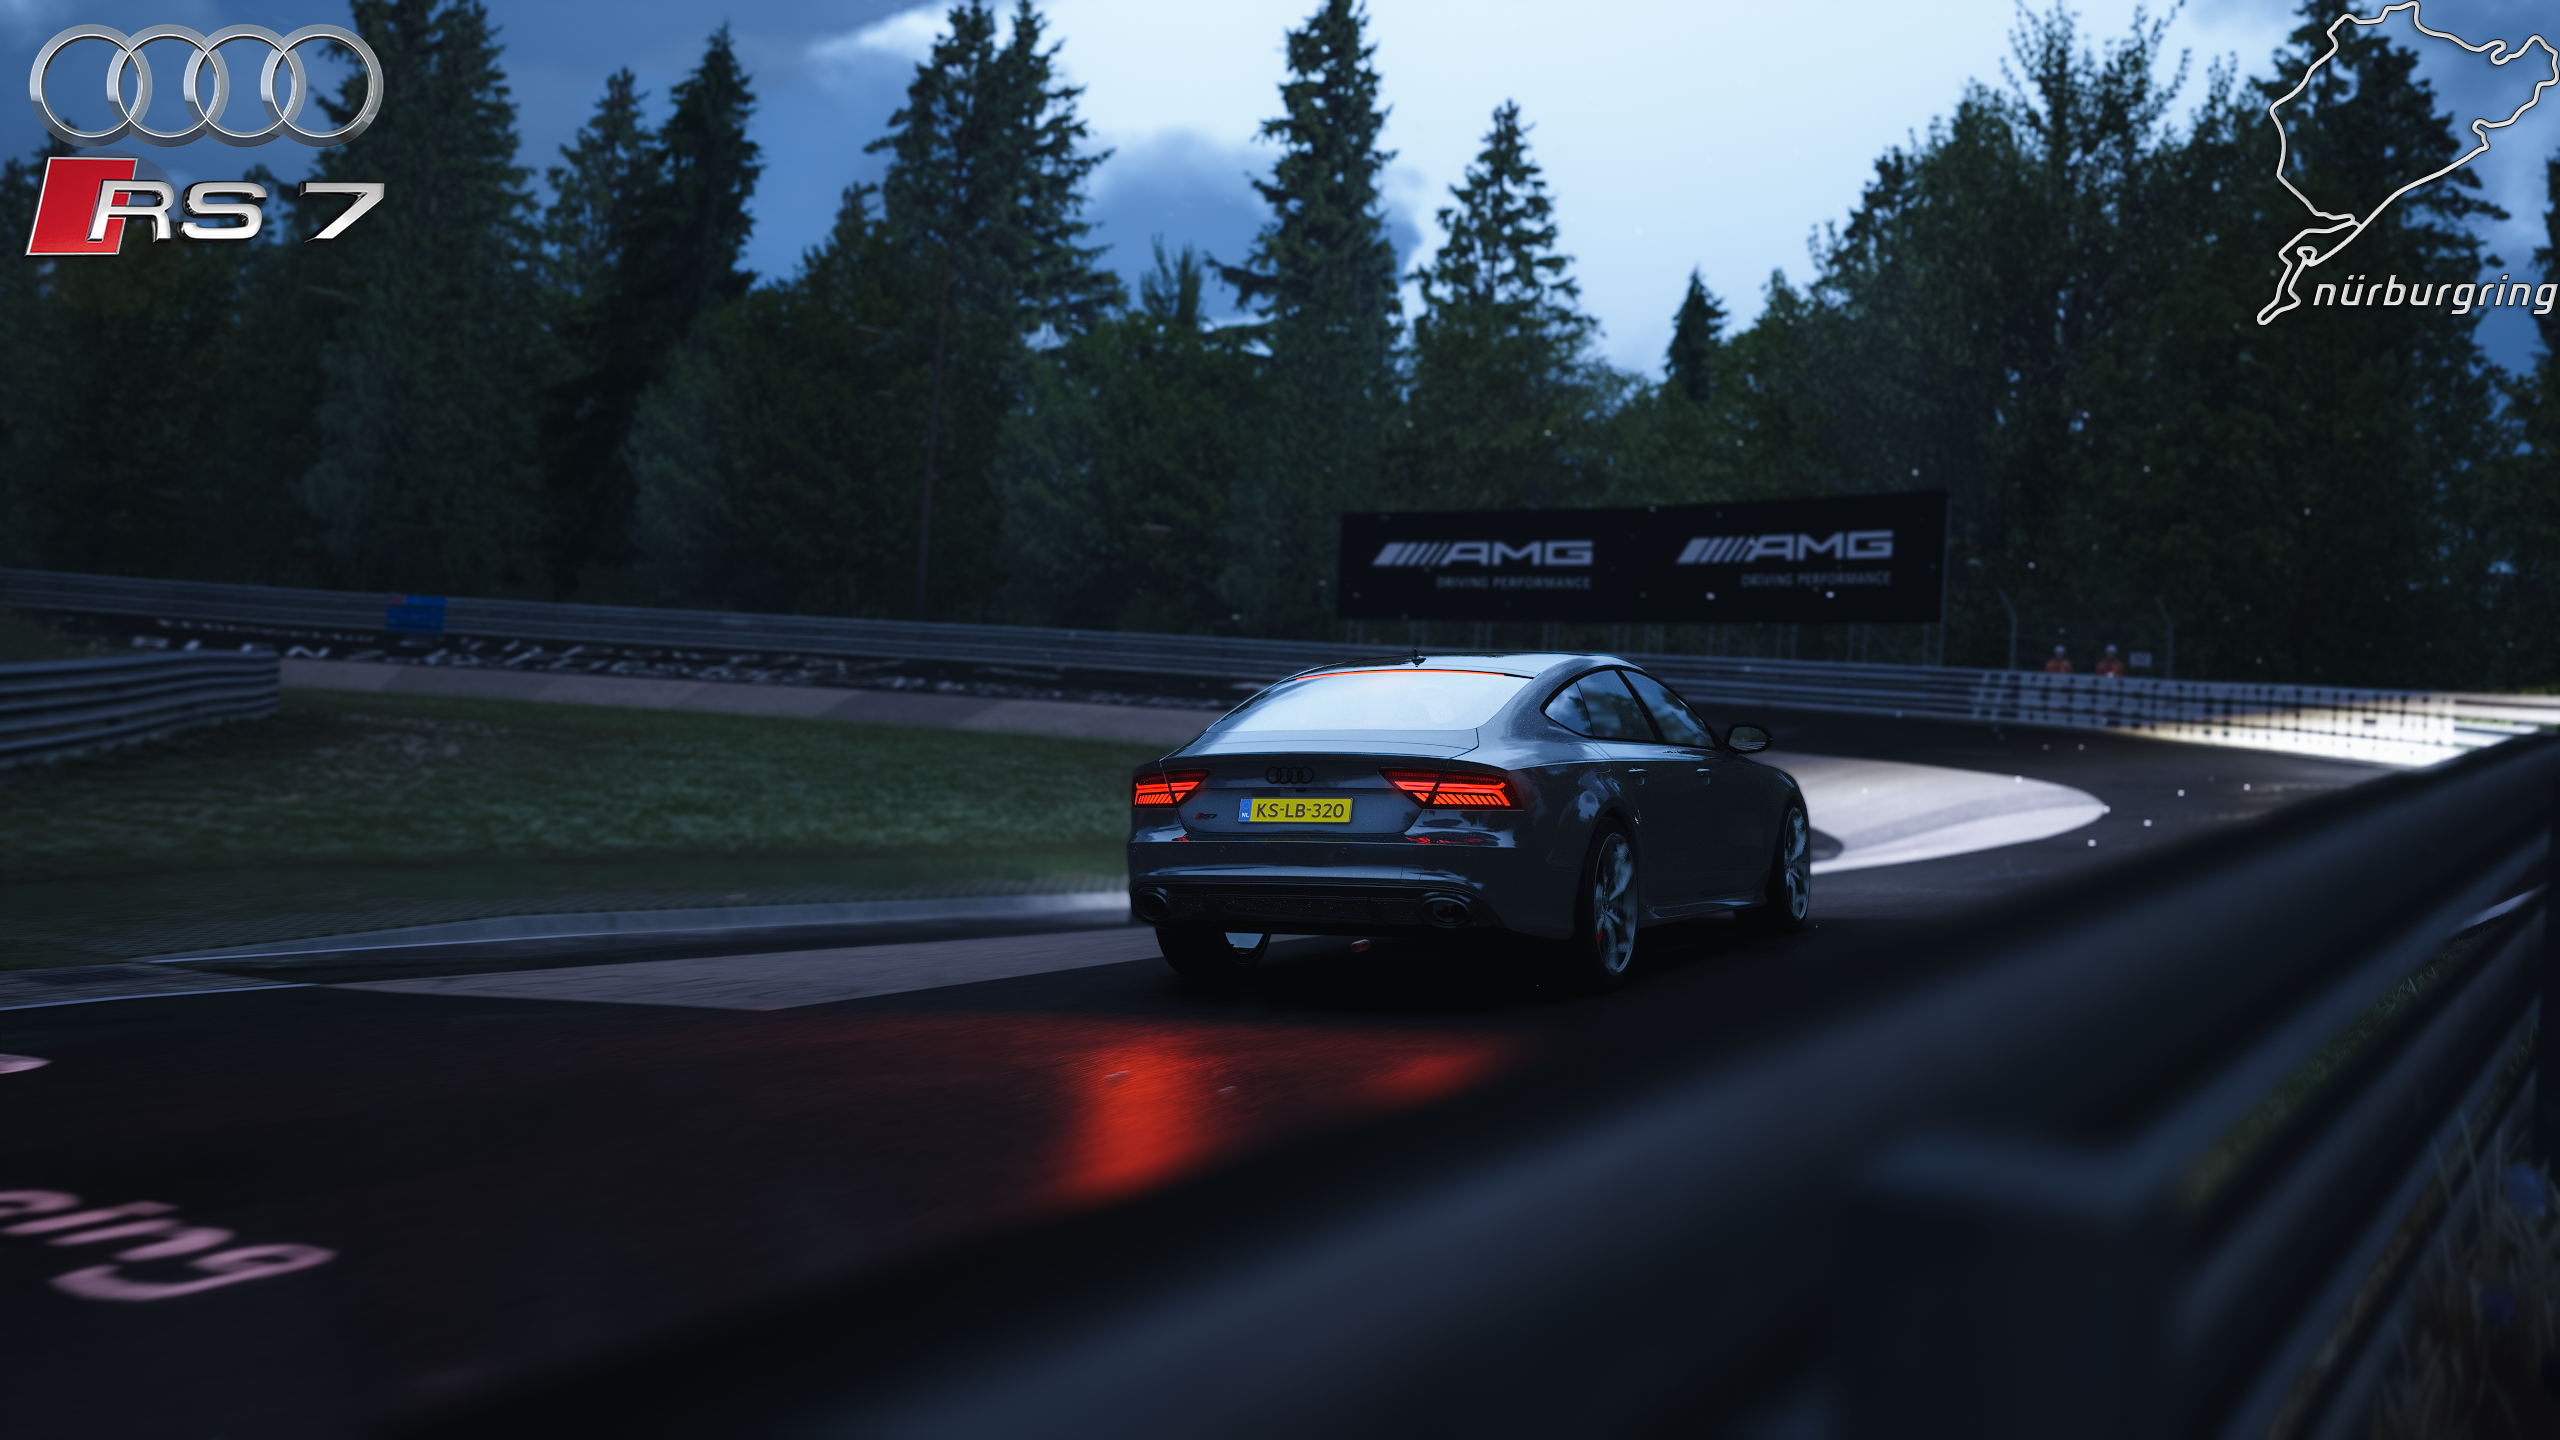 Audi RS7 Audi Car Vehicle Nurburgring Rain Tracks Assetto Corsa Racing Racing Simulators Video Games 2560x1440